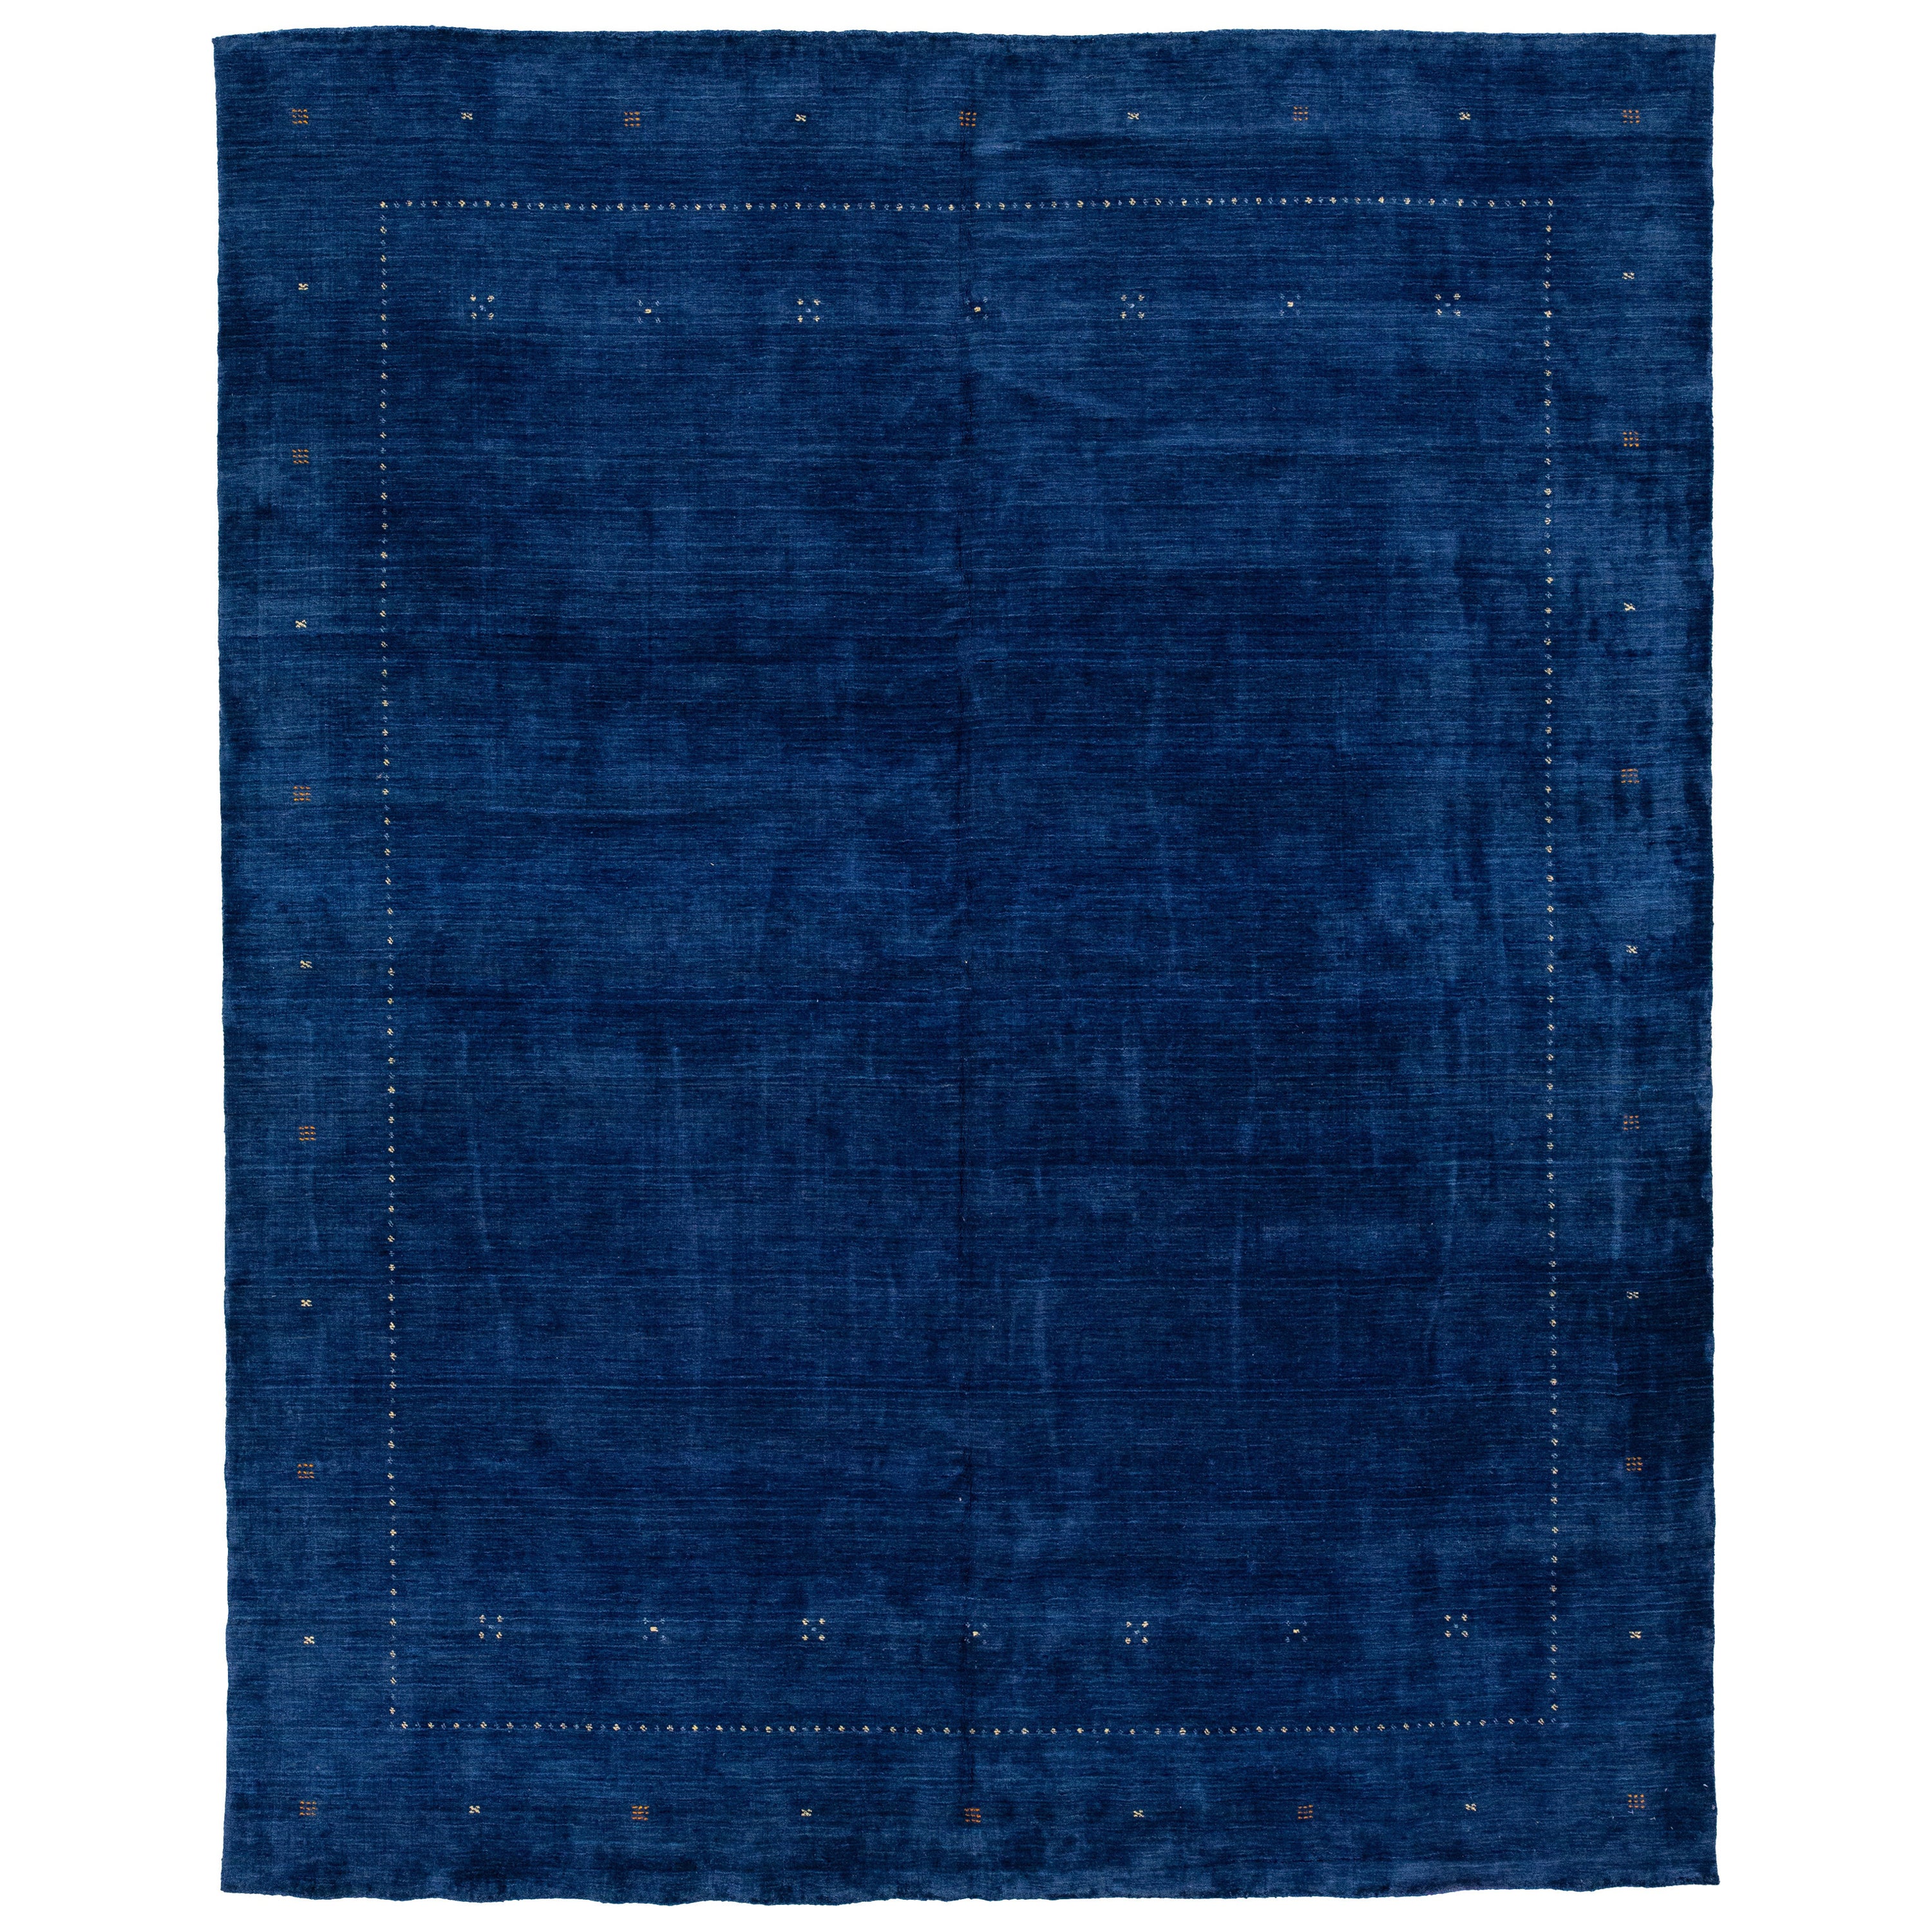 Tapis en laine Gabbeh bleu royal, moderne et minimaliste, tissé à la main  en vente